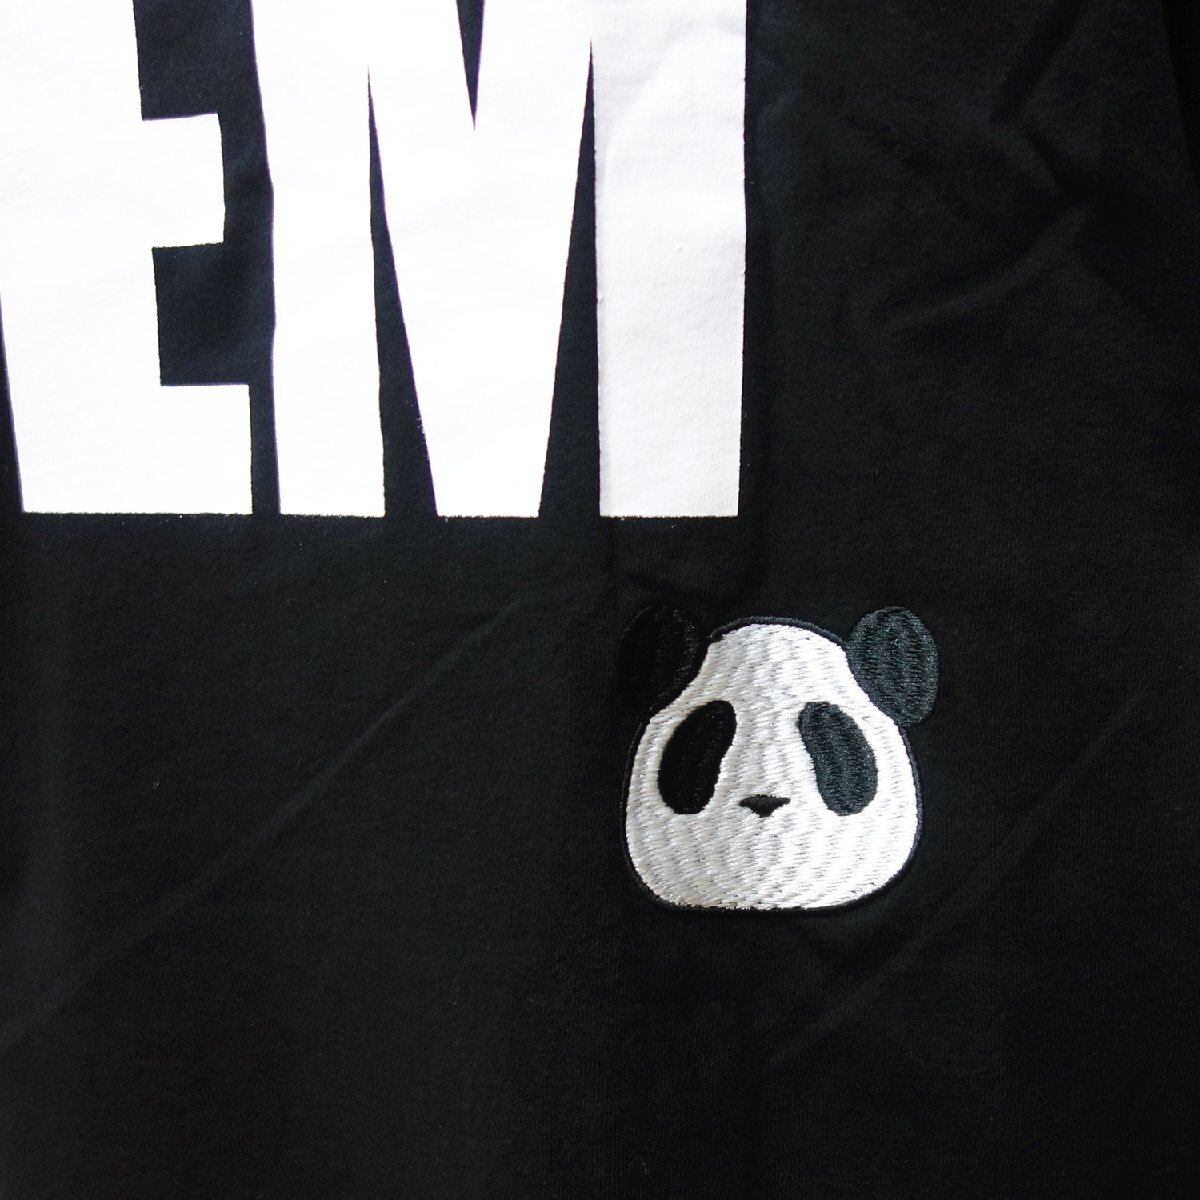 送料無料 パンディエスタ L サイズ 554105 半袖 Tシャツ 黒 オーバーサイズ ビッグシルエット PANDIESTA JAPAN 半T パンダ 熊猫 メンズ JF_PANDIESTA パンディエスタ